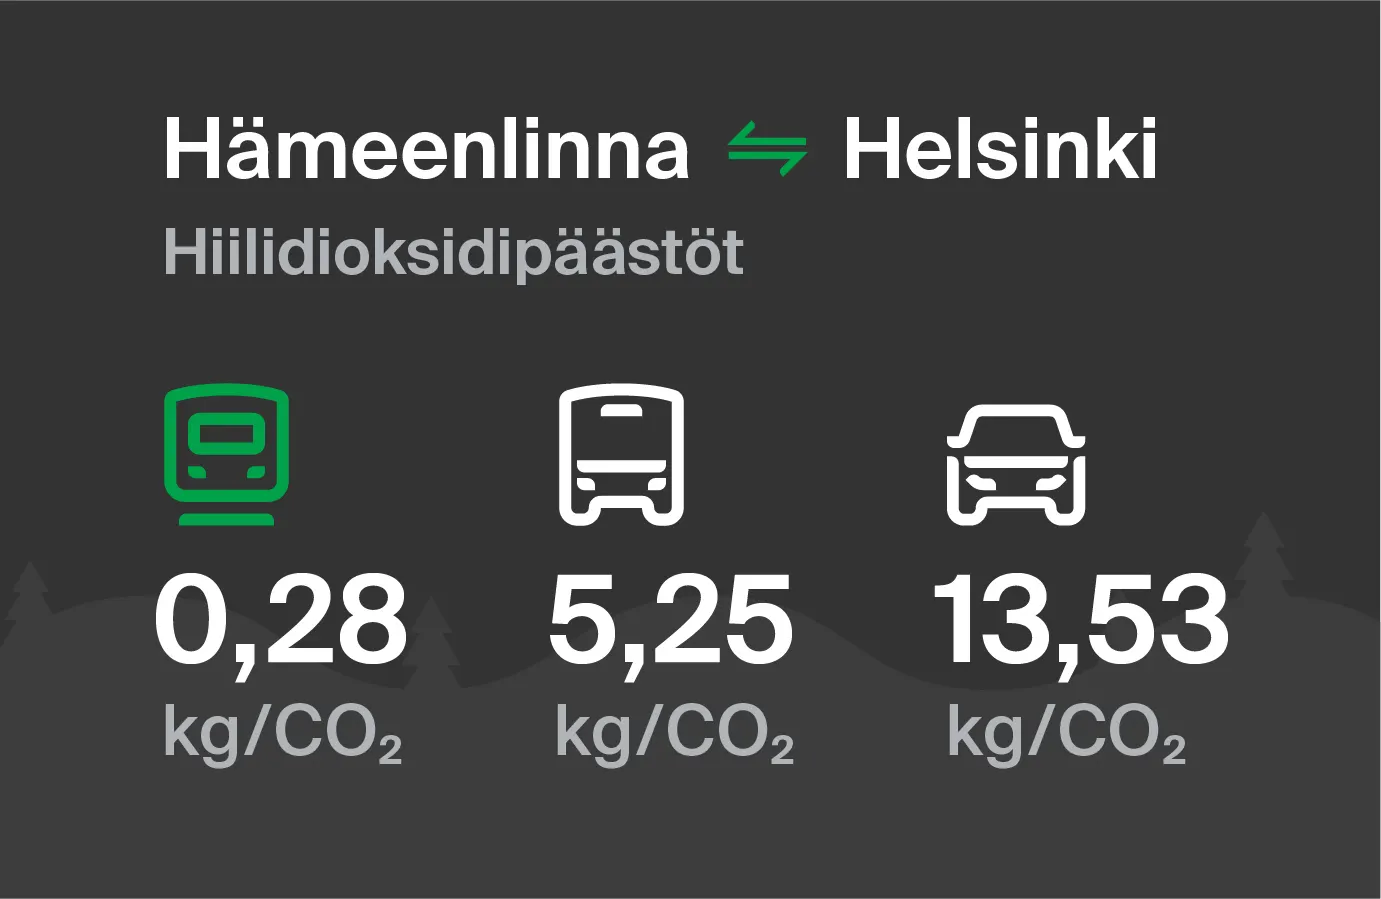 Hiilidioksidipäästöt Hämeenlinnasta Helsinkiin eri kulkuvälinemuodoilla: junalla 0,28 kg/CO2, bussilla 5,25 kg/CO2 ja autolla 13,53 kg/CO2.